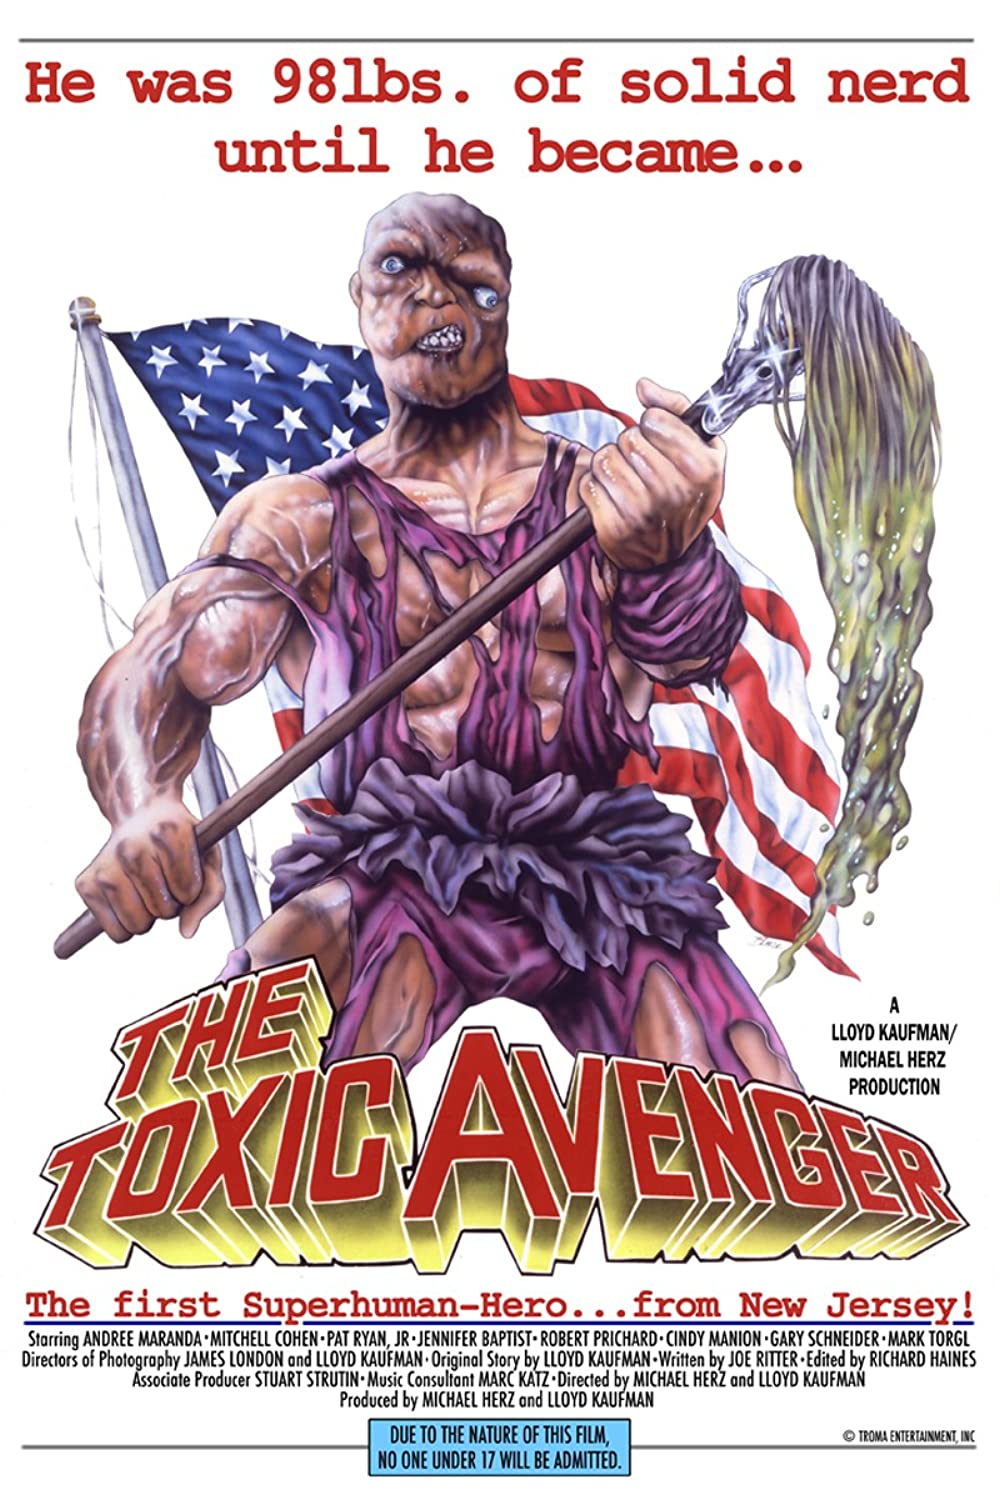 Filmbeschreibung zu The Toxic Avenger